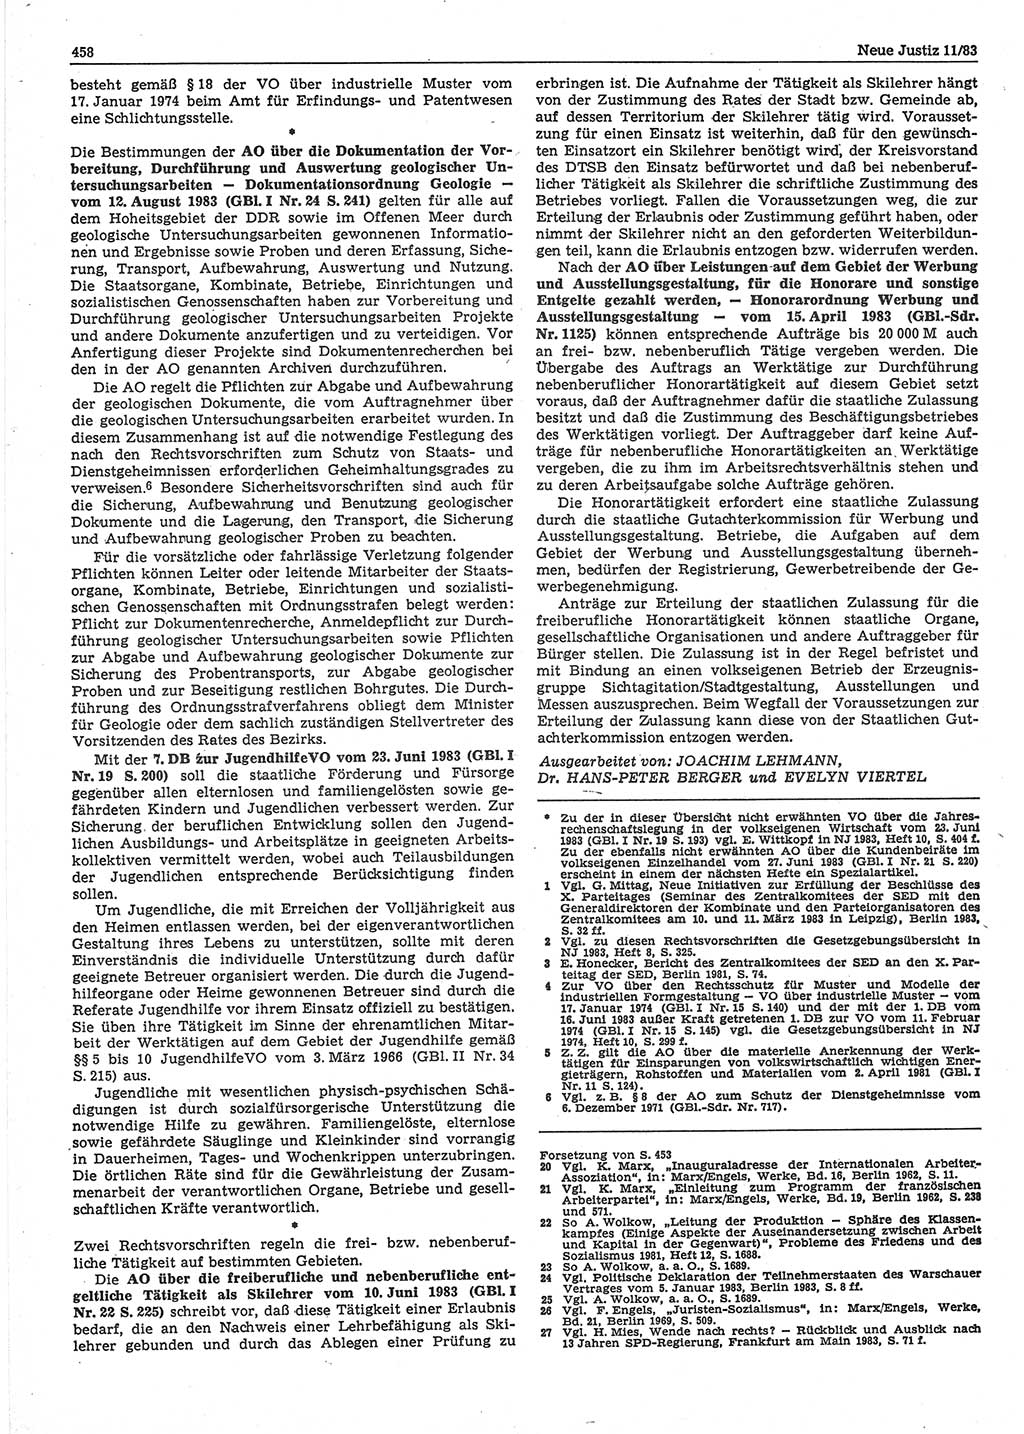 Neue Justiz (NJ), Zeitschrift für sozialistisches Recht und Gesetzlichkeit [Deutsche Demokratische Republik (DDR)], 37. Jahrgang 1983, Seite 458 (NJ DDR 1983, S. 458)